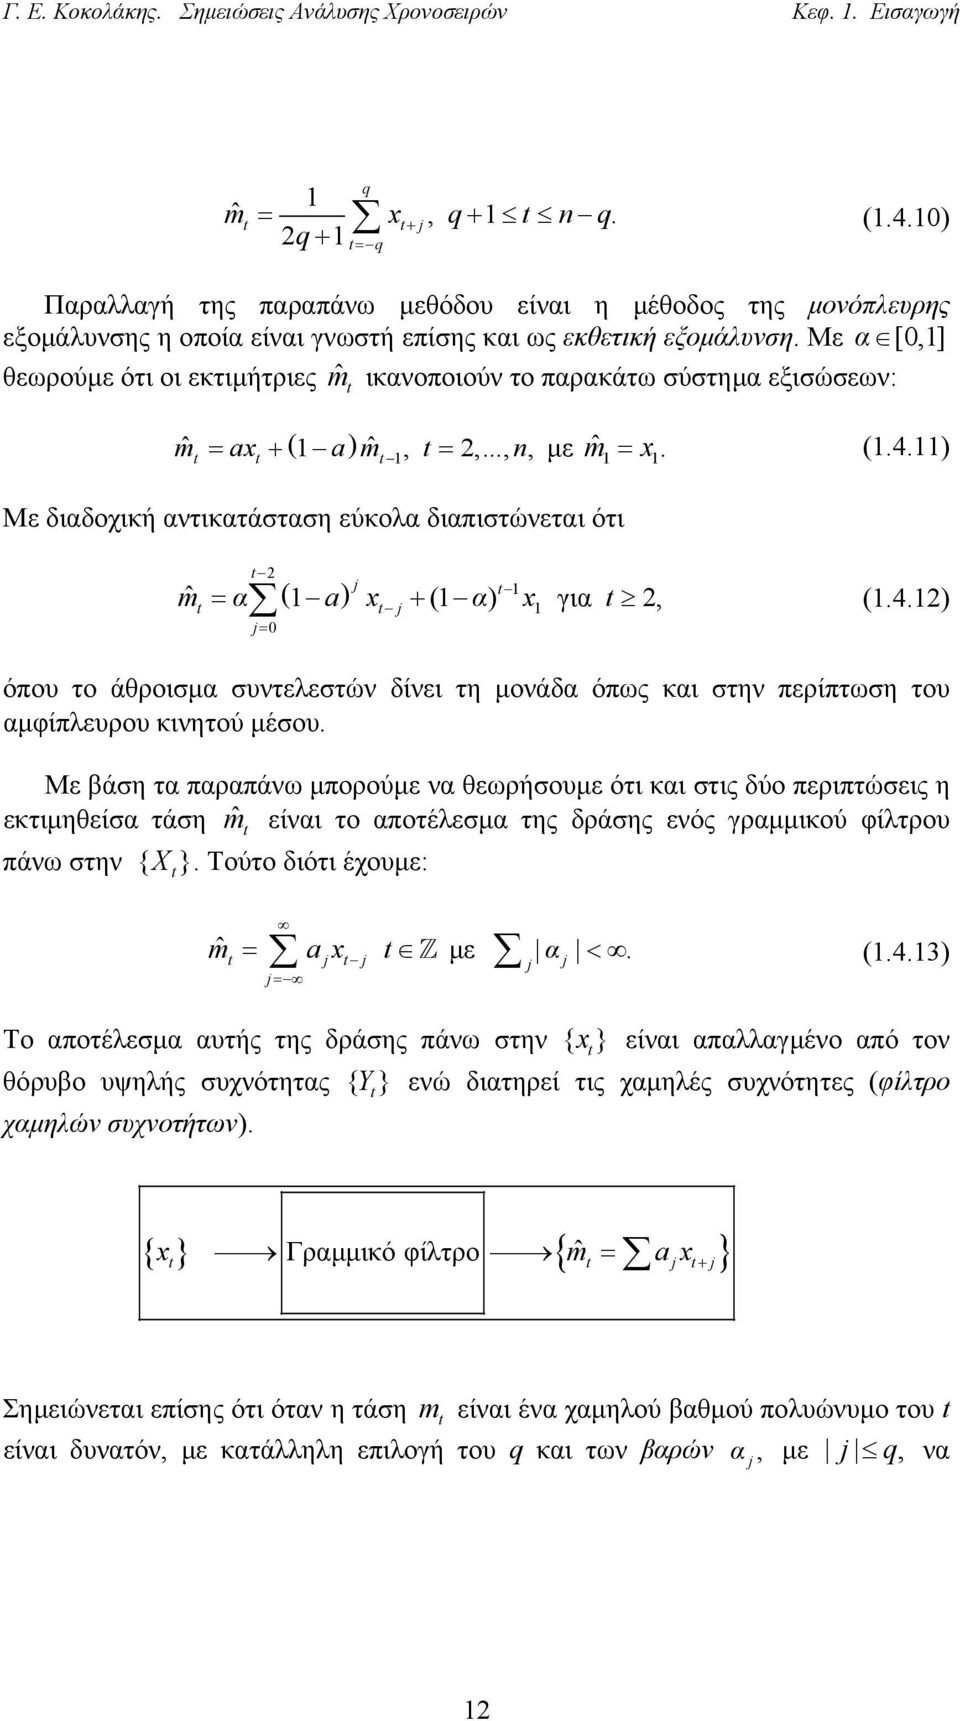 Με α [0,] θεωρούµε ότι οι εκτιµήτριες mˆ ικανοποιούν το παρακάτω σύστηµα εξισώσεων: mˆ ( ) ˆ = ax + a m, =,...,, µε mˆ = x. (.4.